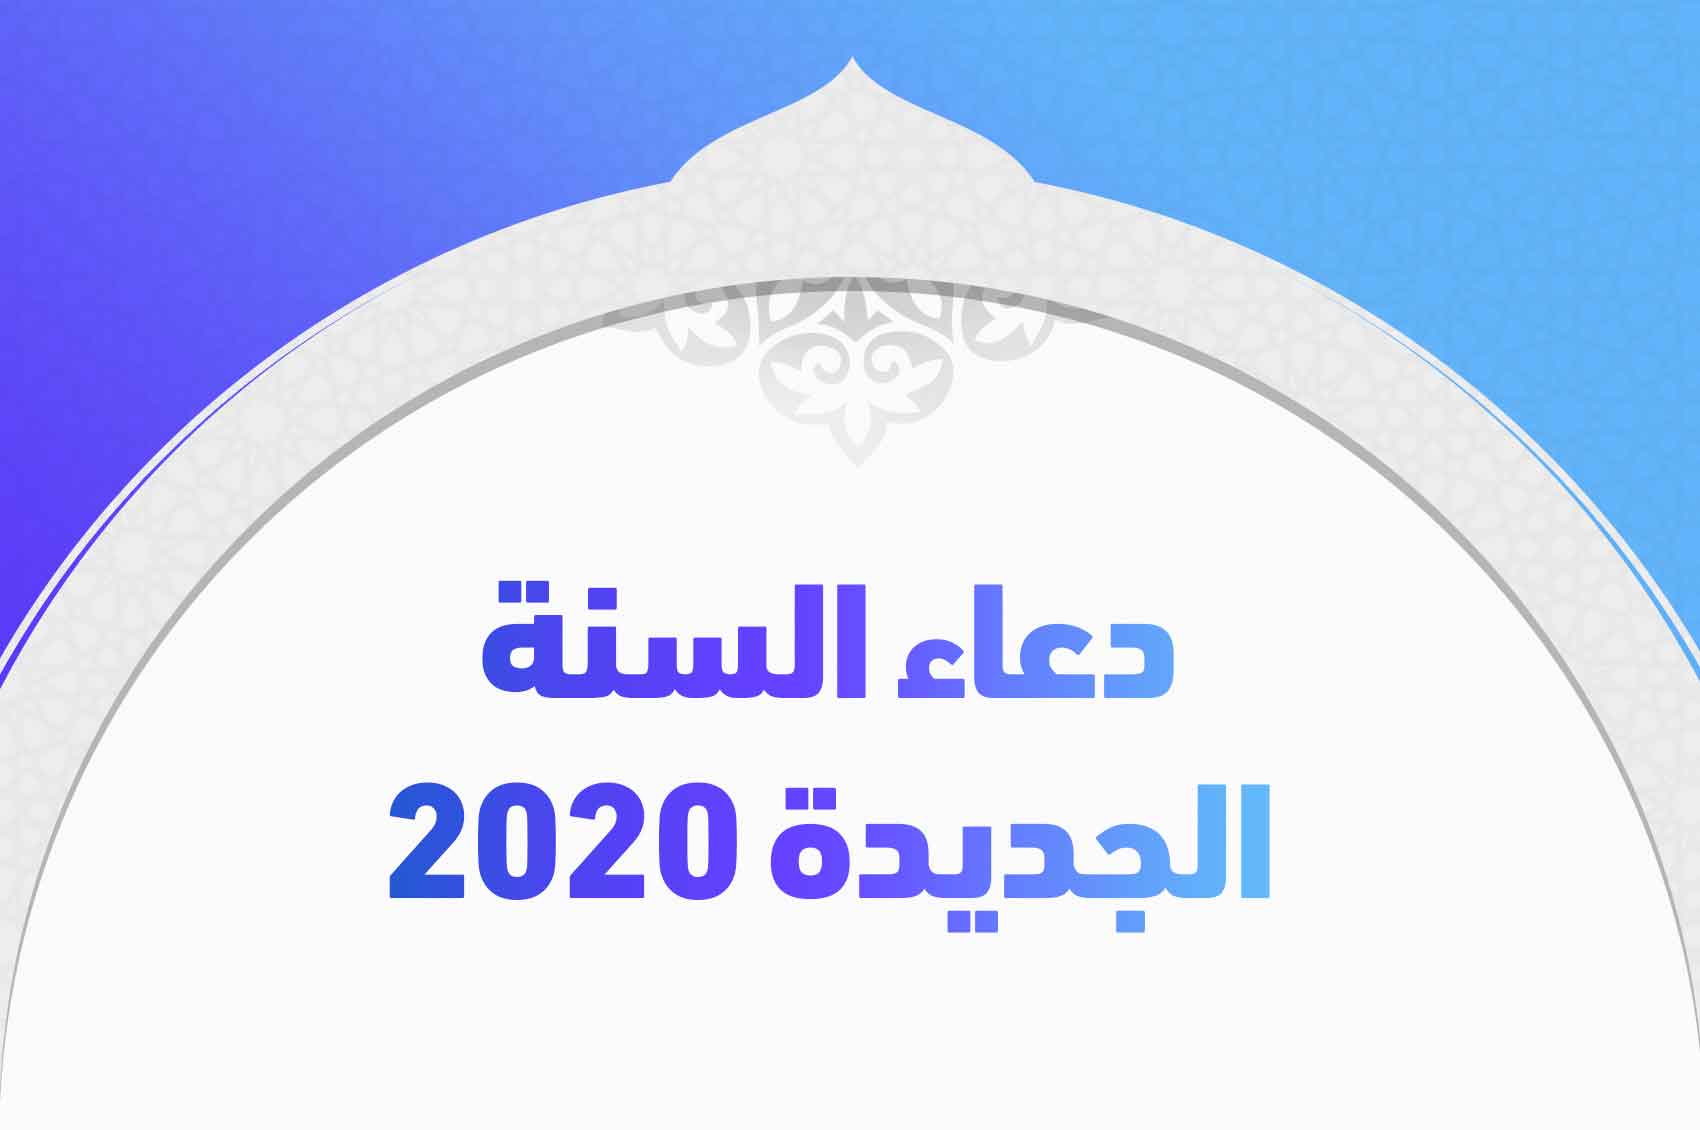 دعاء السنة الجديدة 2020 وأفضل أدعية العام الجديد